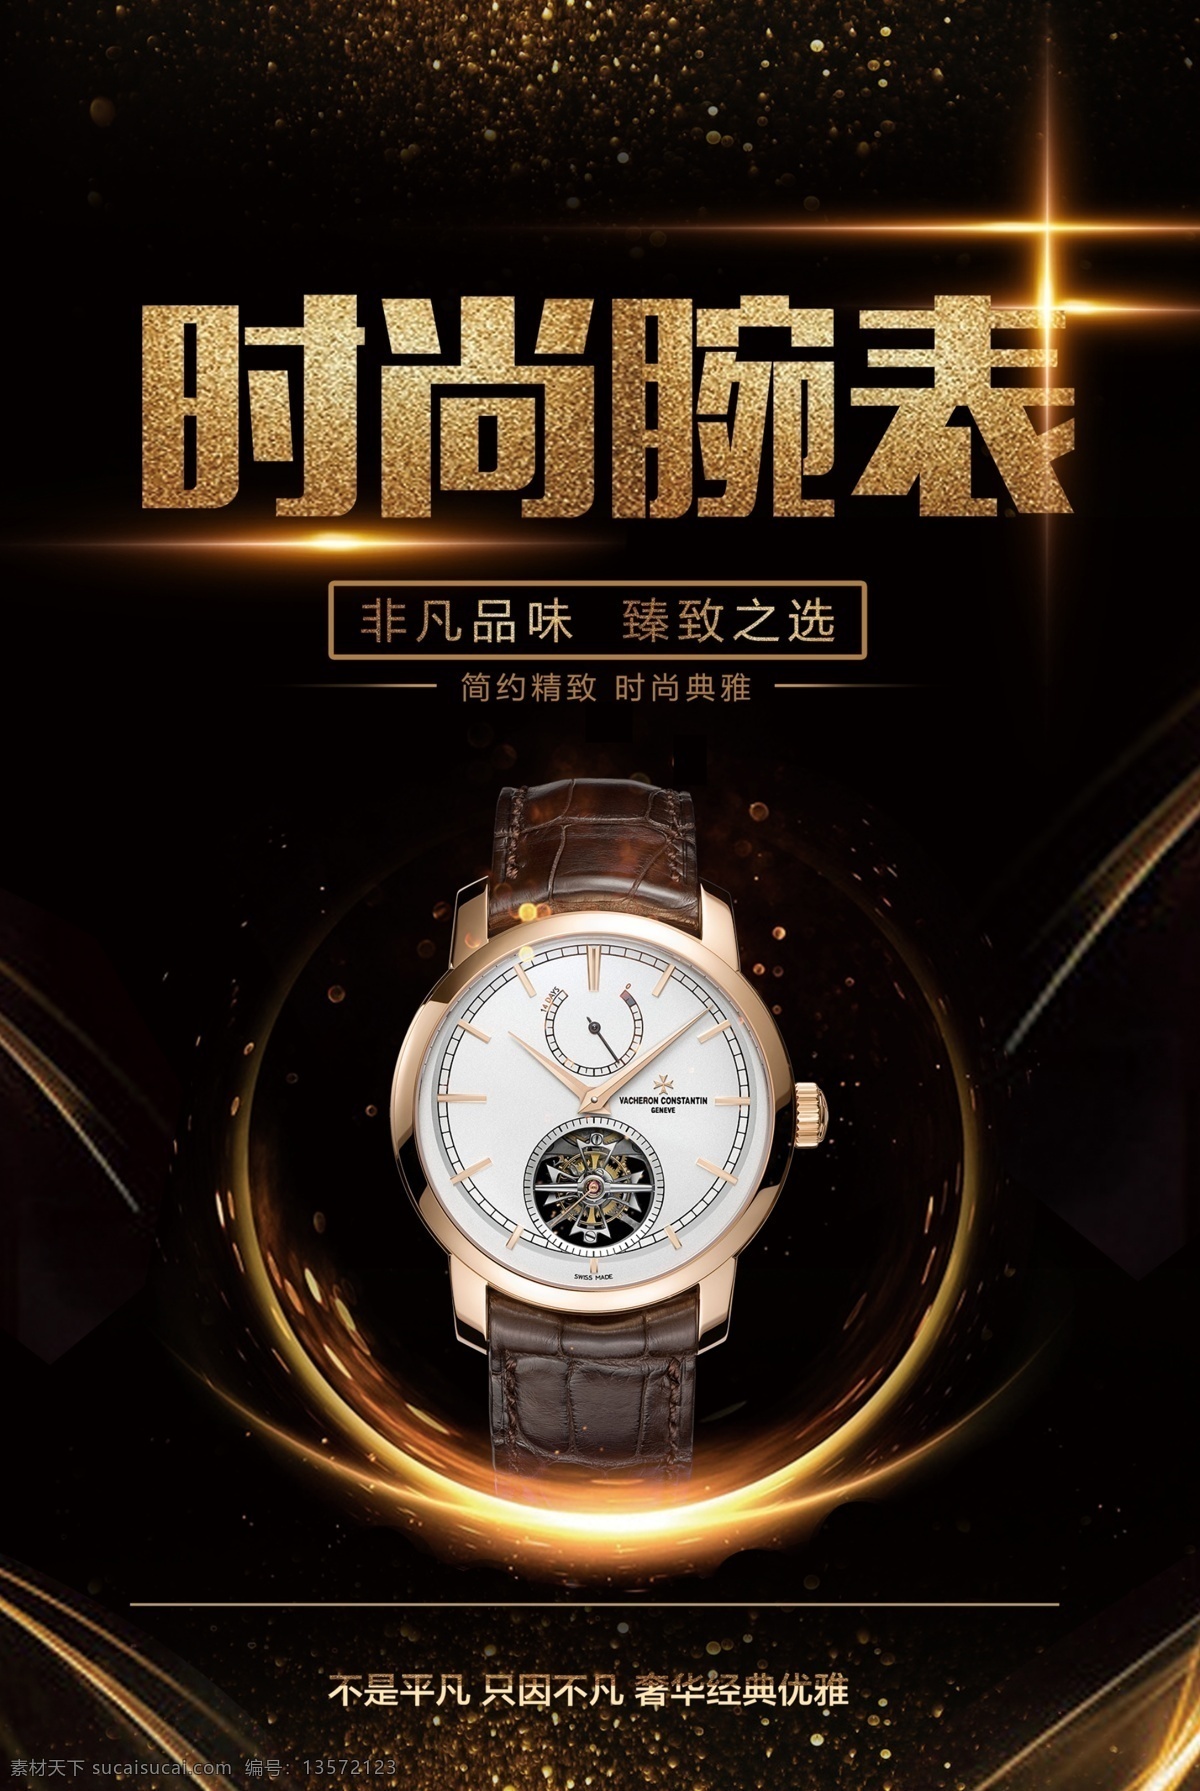 时尚腕表 腕表销售 腕表出售 腕表促销 手表 钟表 佩带手表 黑色背景 促销海报